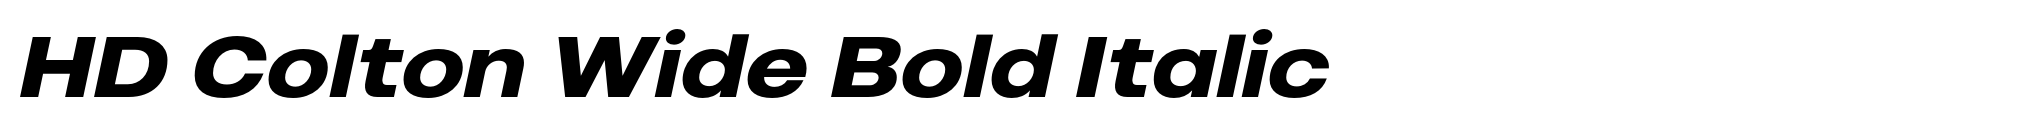 HD Colton Wide Bold Italic image